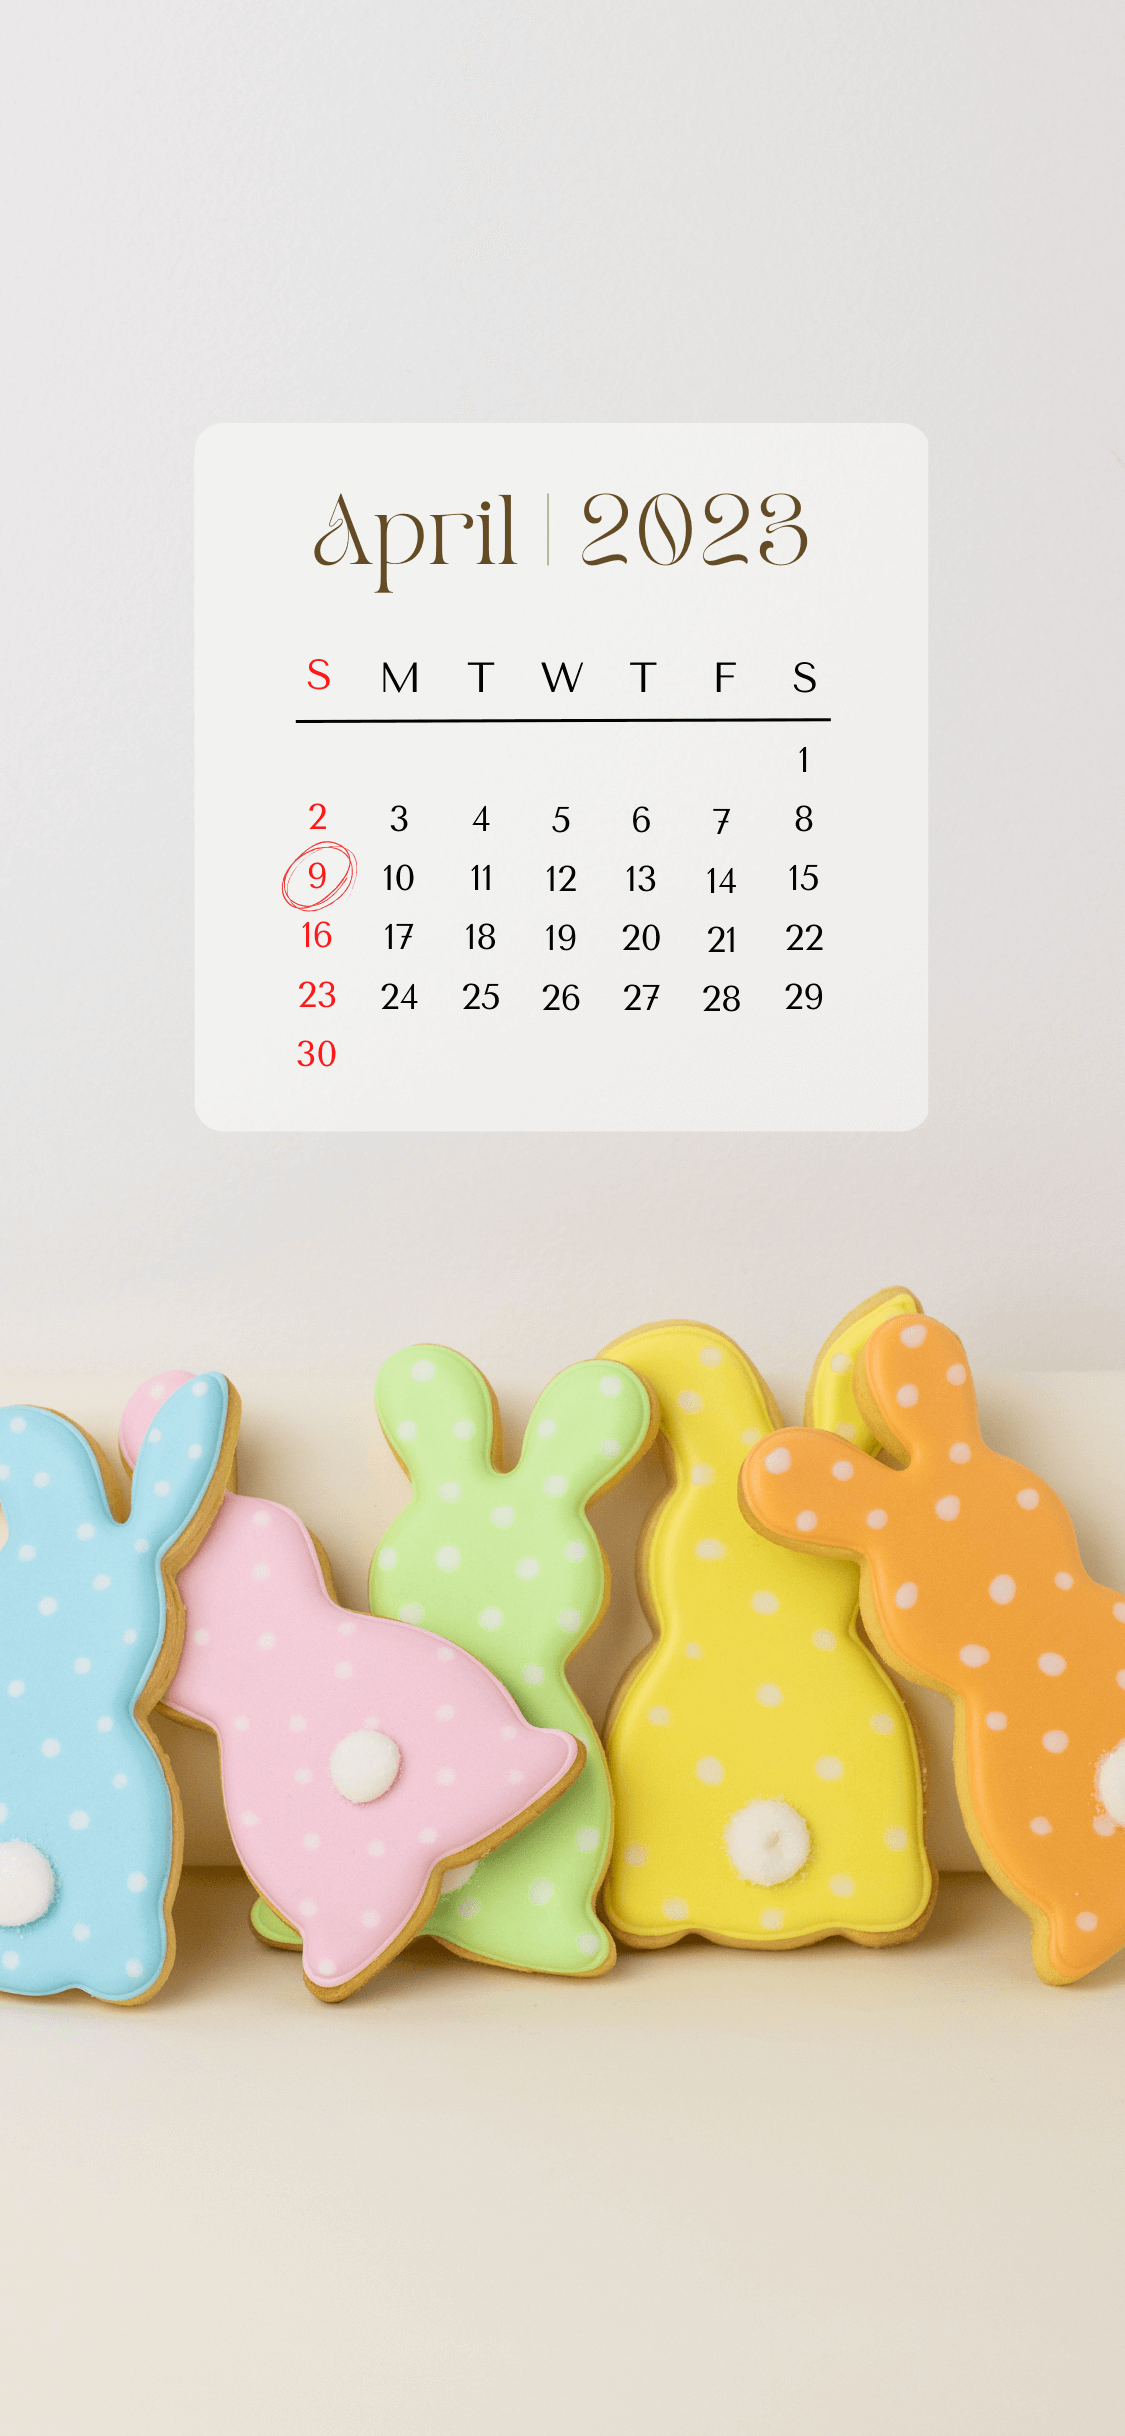 floral iphone calendar wallpaper april 2023